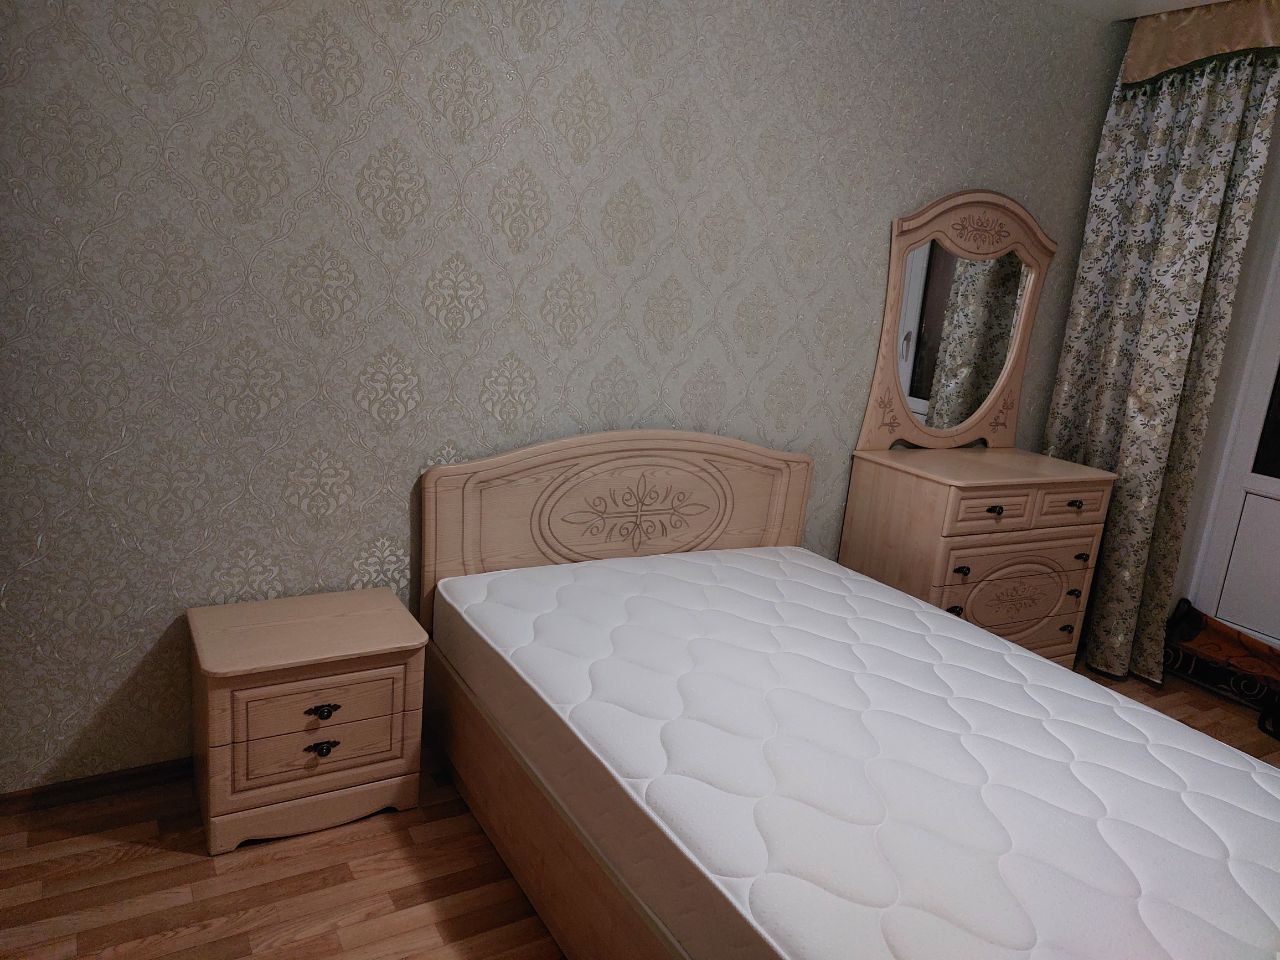 Двуспальная кровать "Натали" 180х190 с подъемным механизмом цвет орех изножье низкое